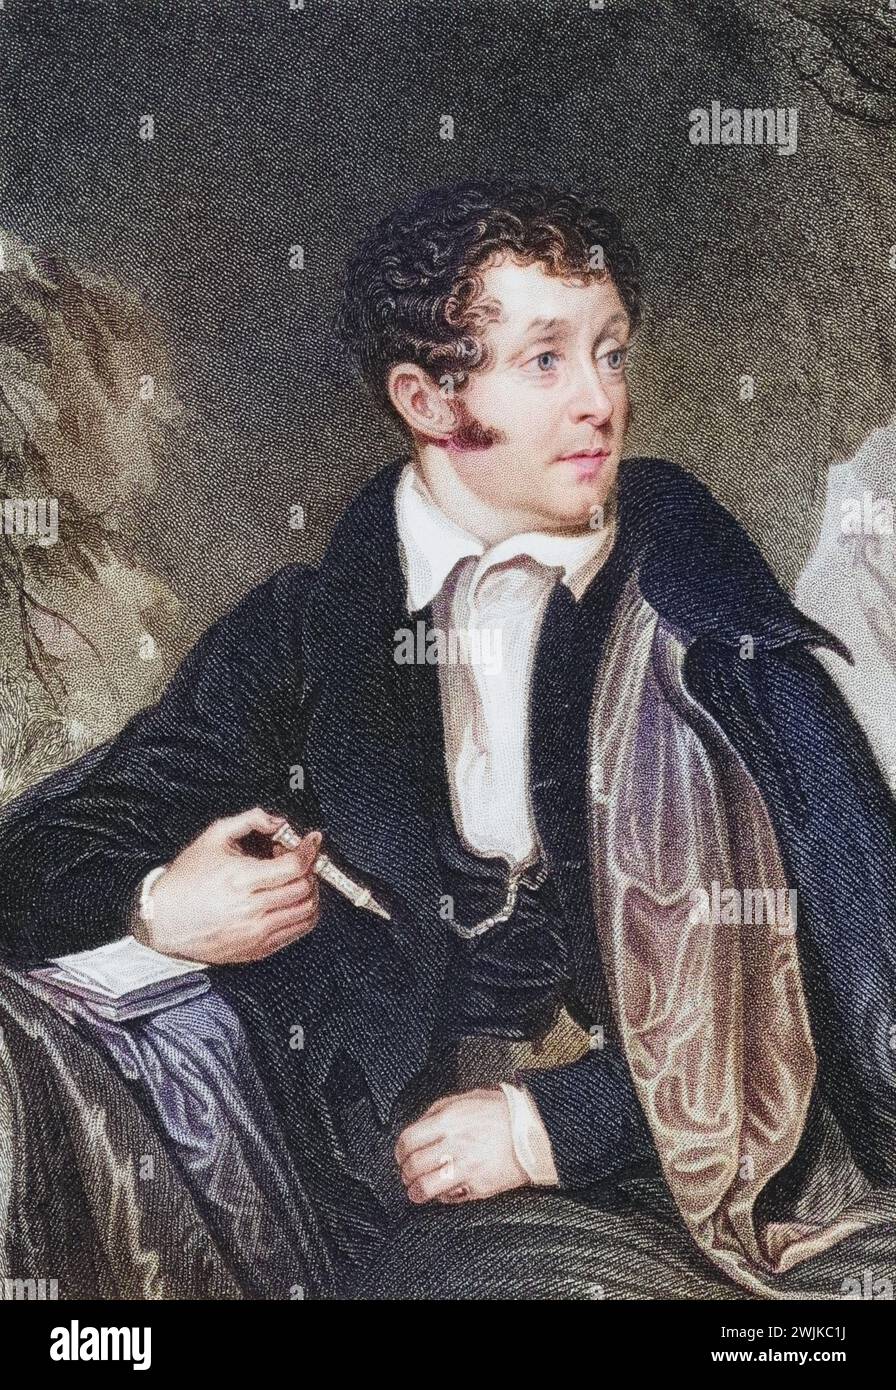 Thomas Campbell (geb. 27. Juli 1777 in Glasgow; gest. 15. Juni 1844 in Boulogne-sur-Mer) war ein schottischer Dichter, Historisch, digital restaurierte Reproduktion von einer Vorlage aus dem 19. Jahrhundert, Record date not stated Stock Photo